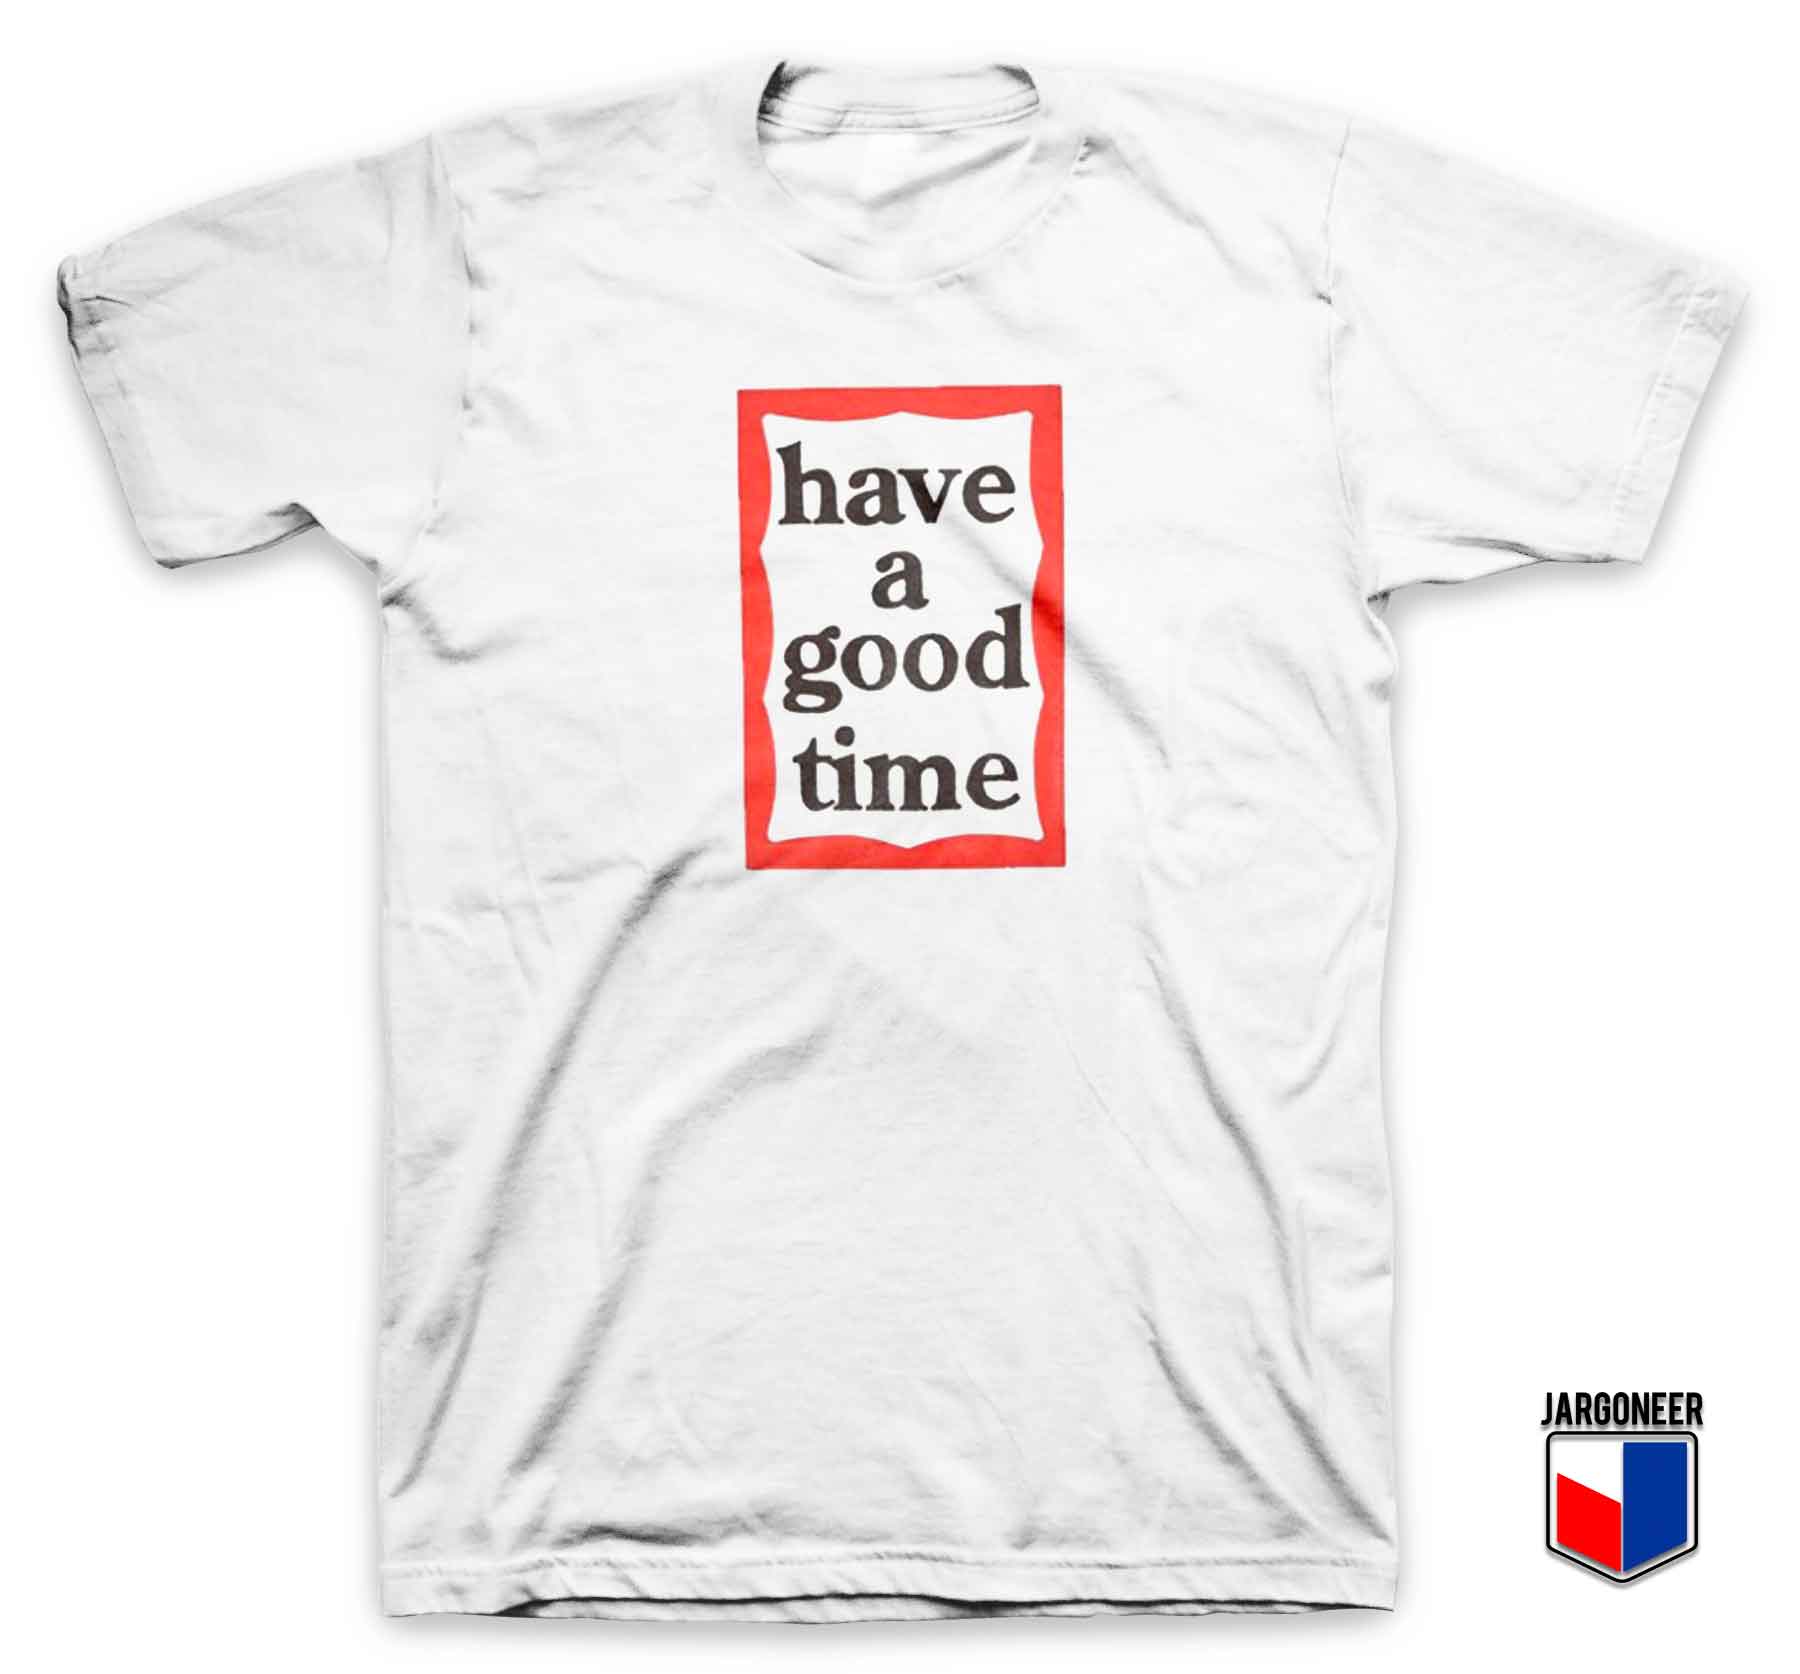 Have A Good Time - Shop Unique Graphic Cool Shirt Designs